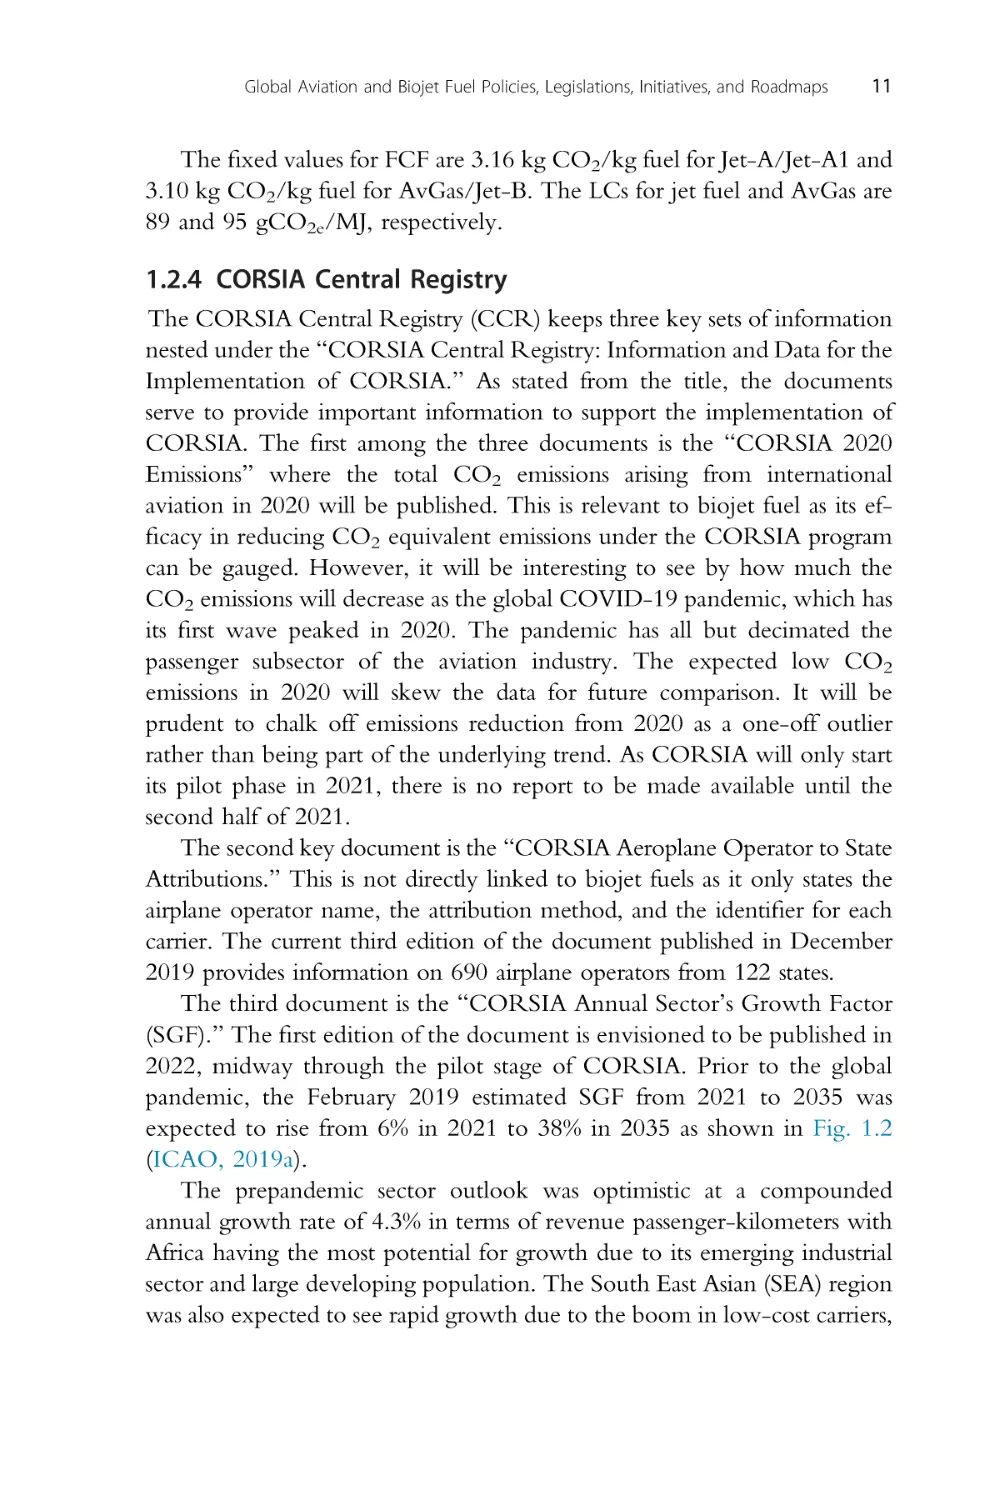 1.2.4 CORSIA Central Registry